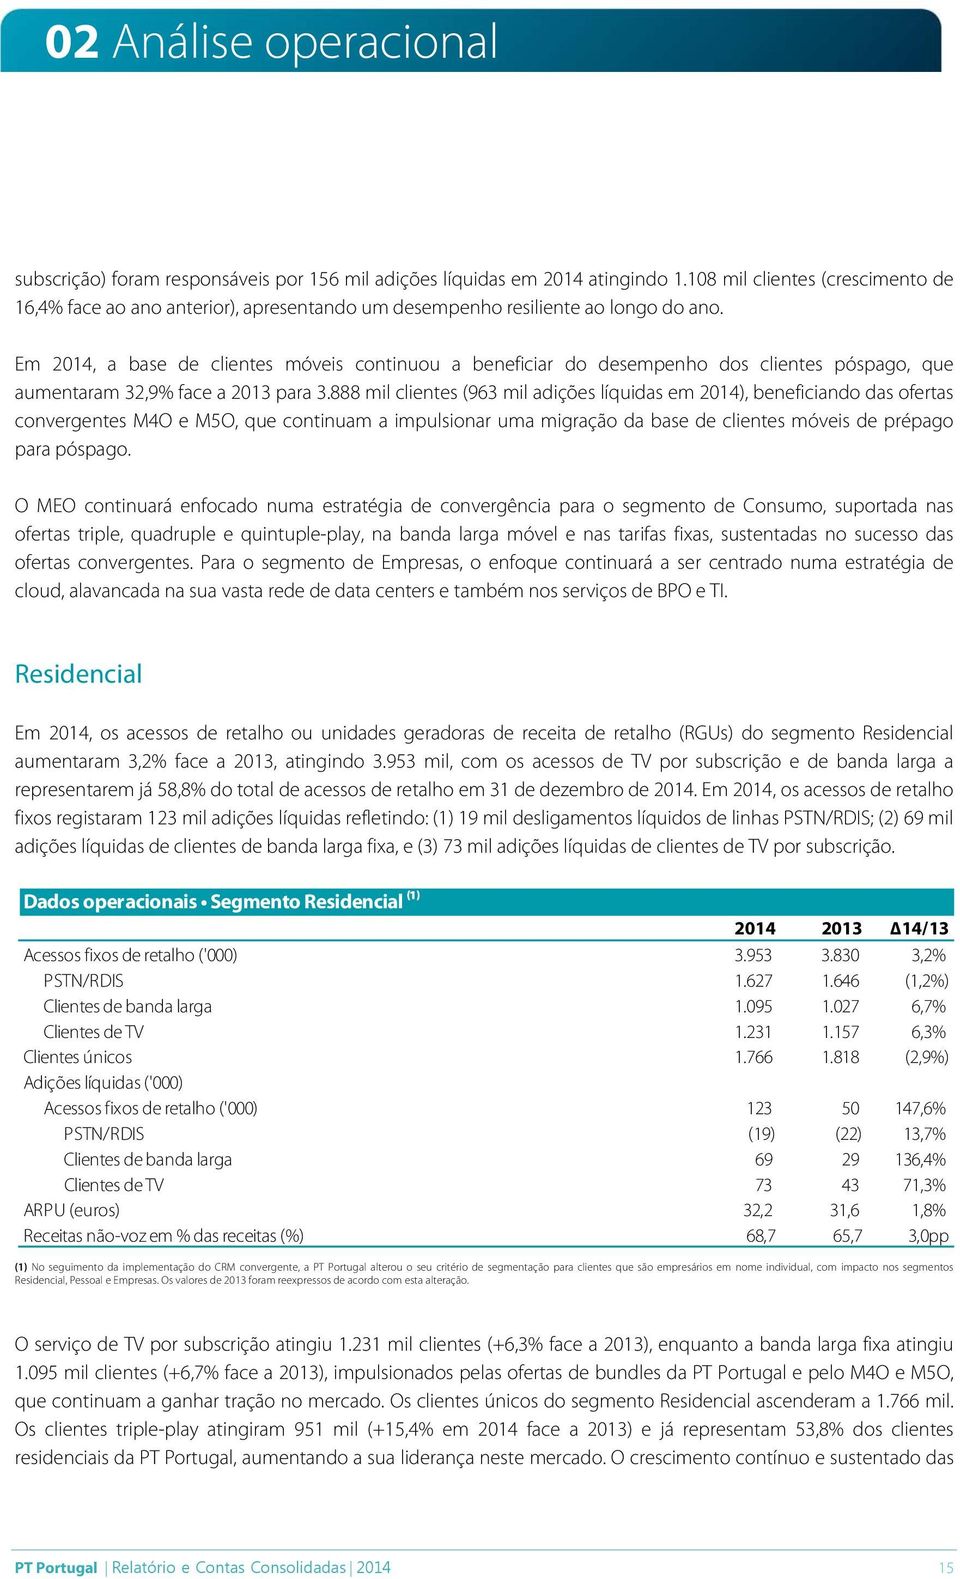 Em 2014, a base de clientes móveis continuou a beneficiar do desempenho dos clientes póspago, que aumentaram 32,9% face a 2013 para 3.